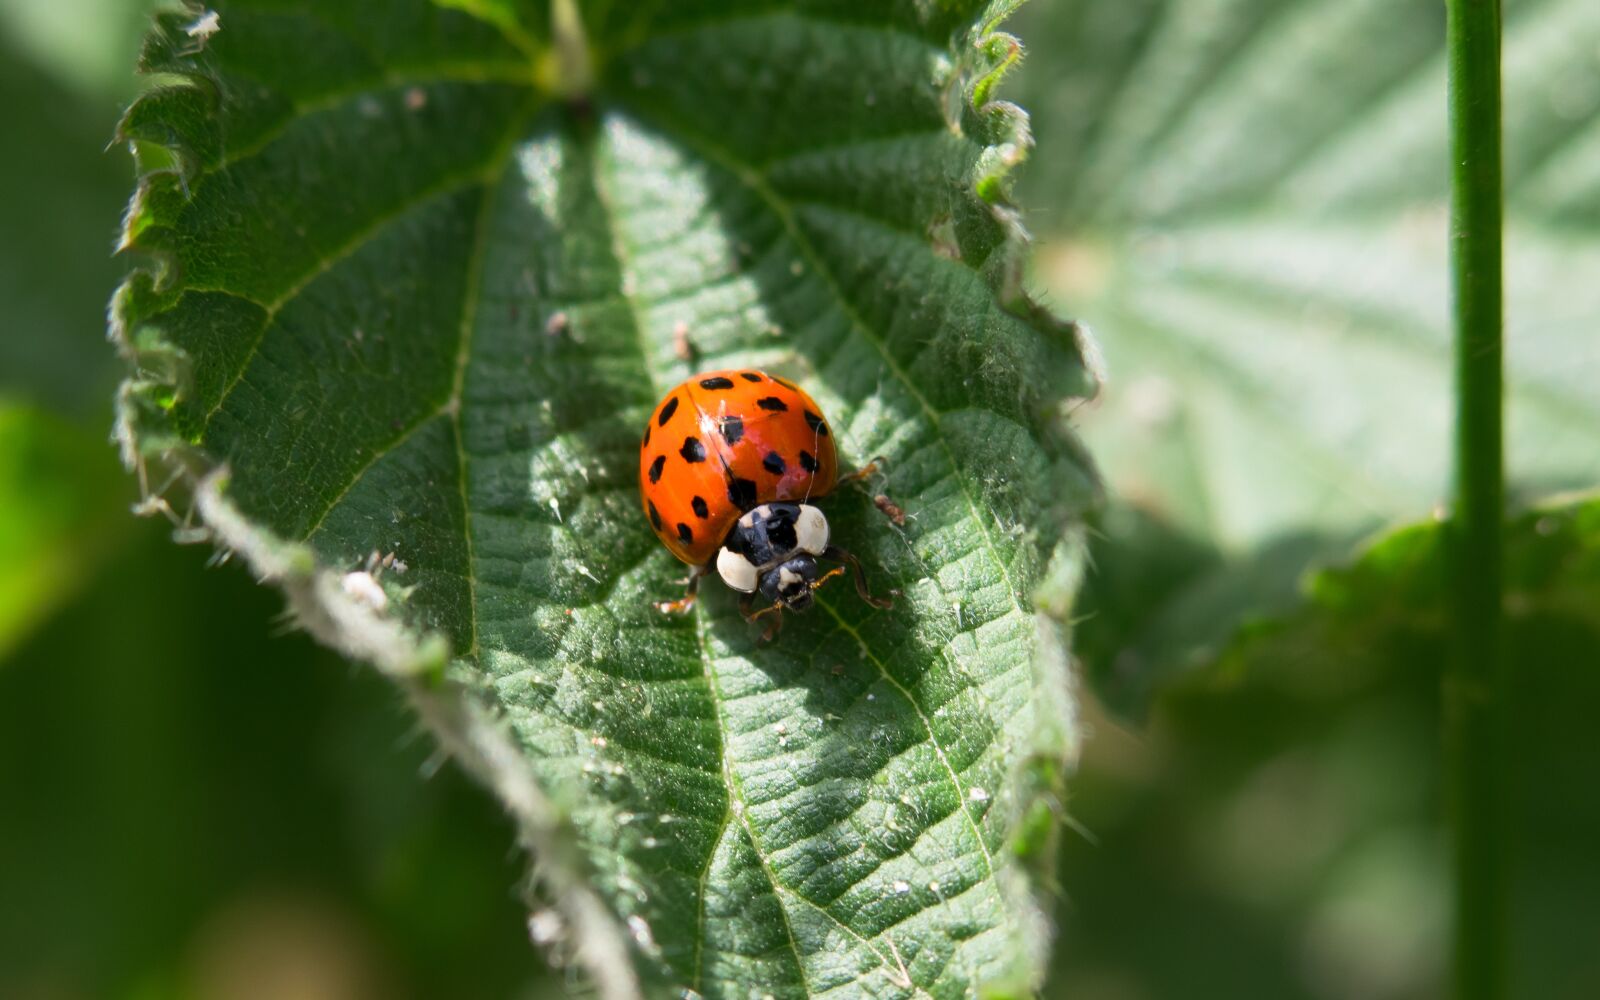 Canon PowerShot G3 X sample photo. Ladybug, beetle, leaf photography